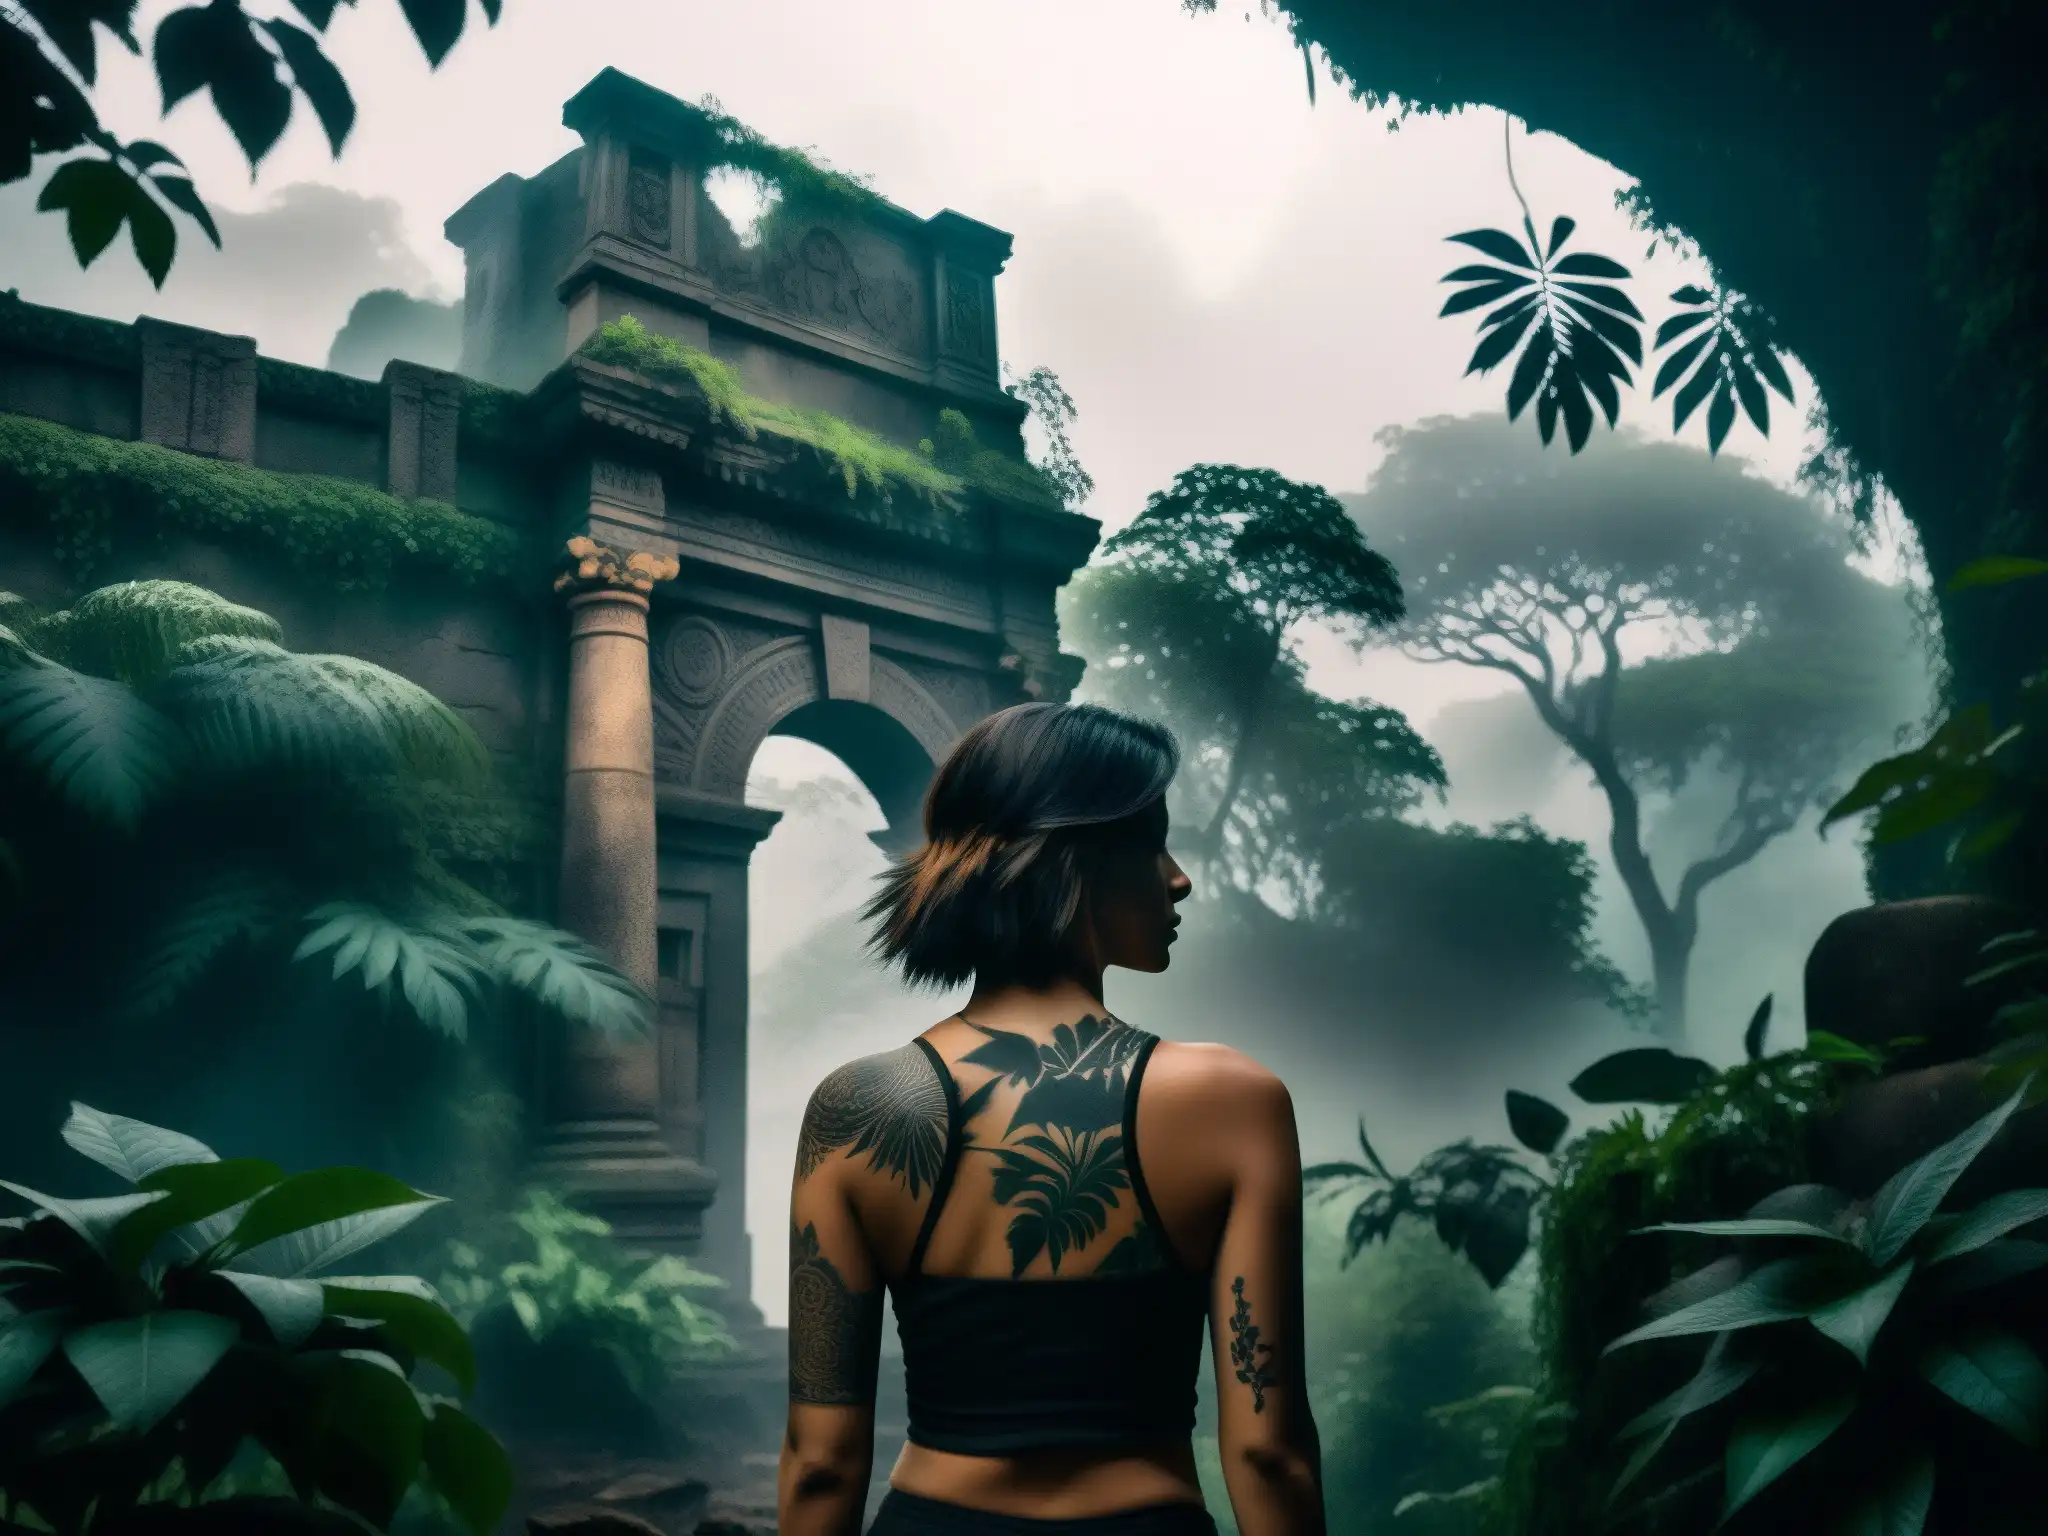 En la selva oscura y brumosa, la Tatuana con magia negra cautiva a sus seguidores con un misterio ancestral